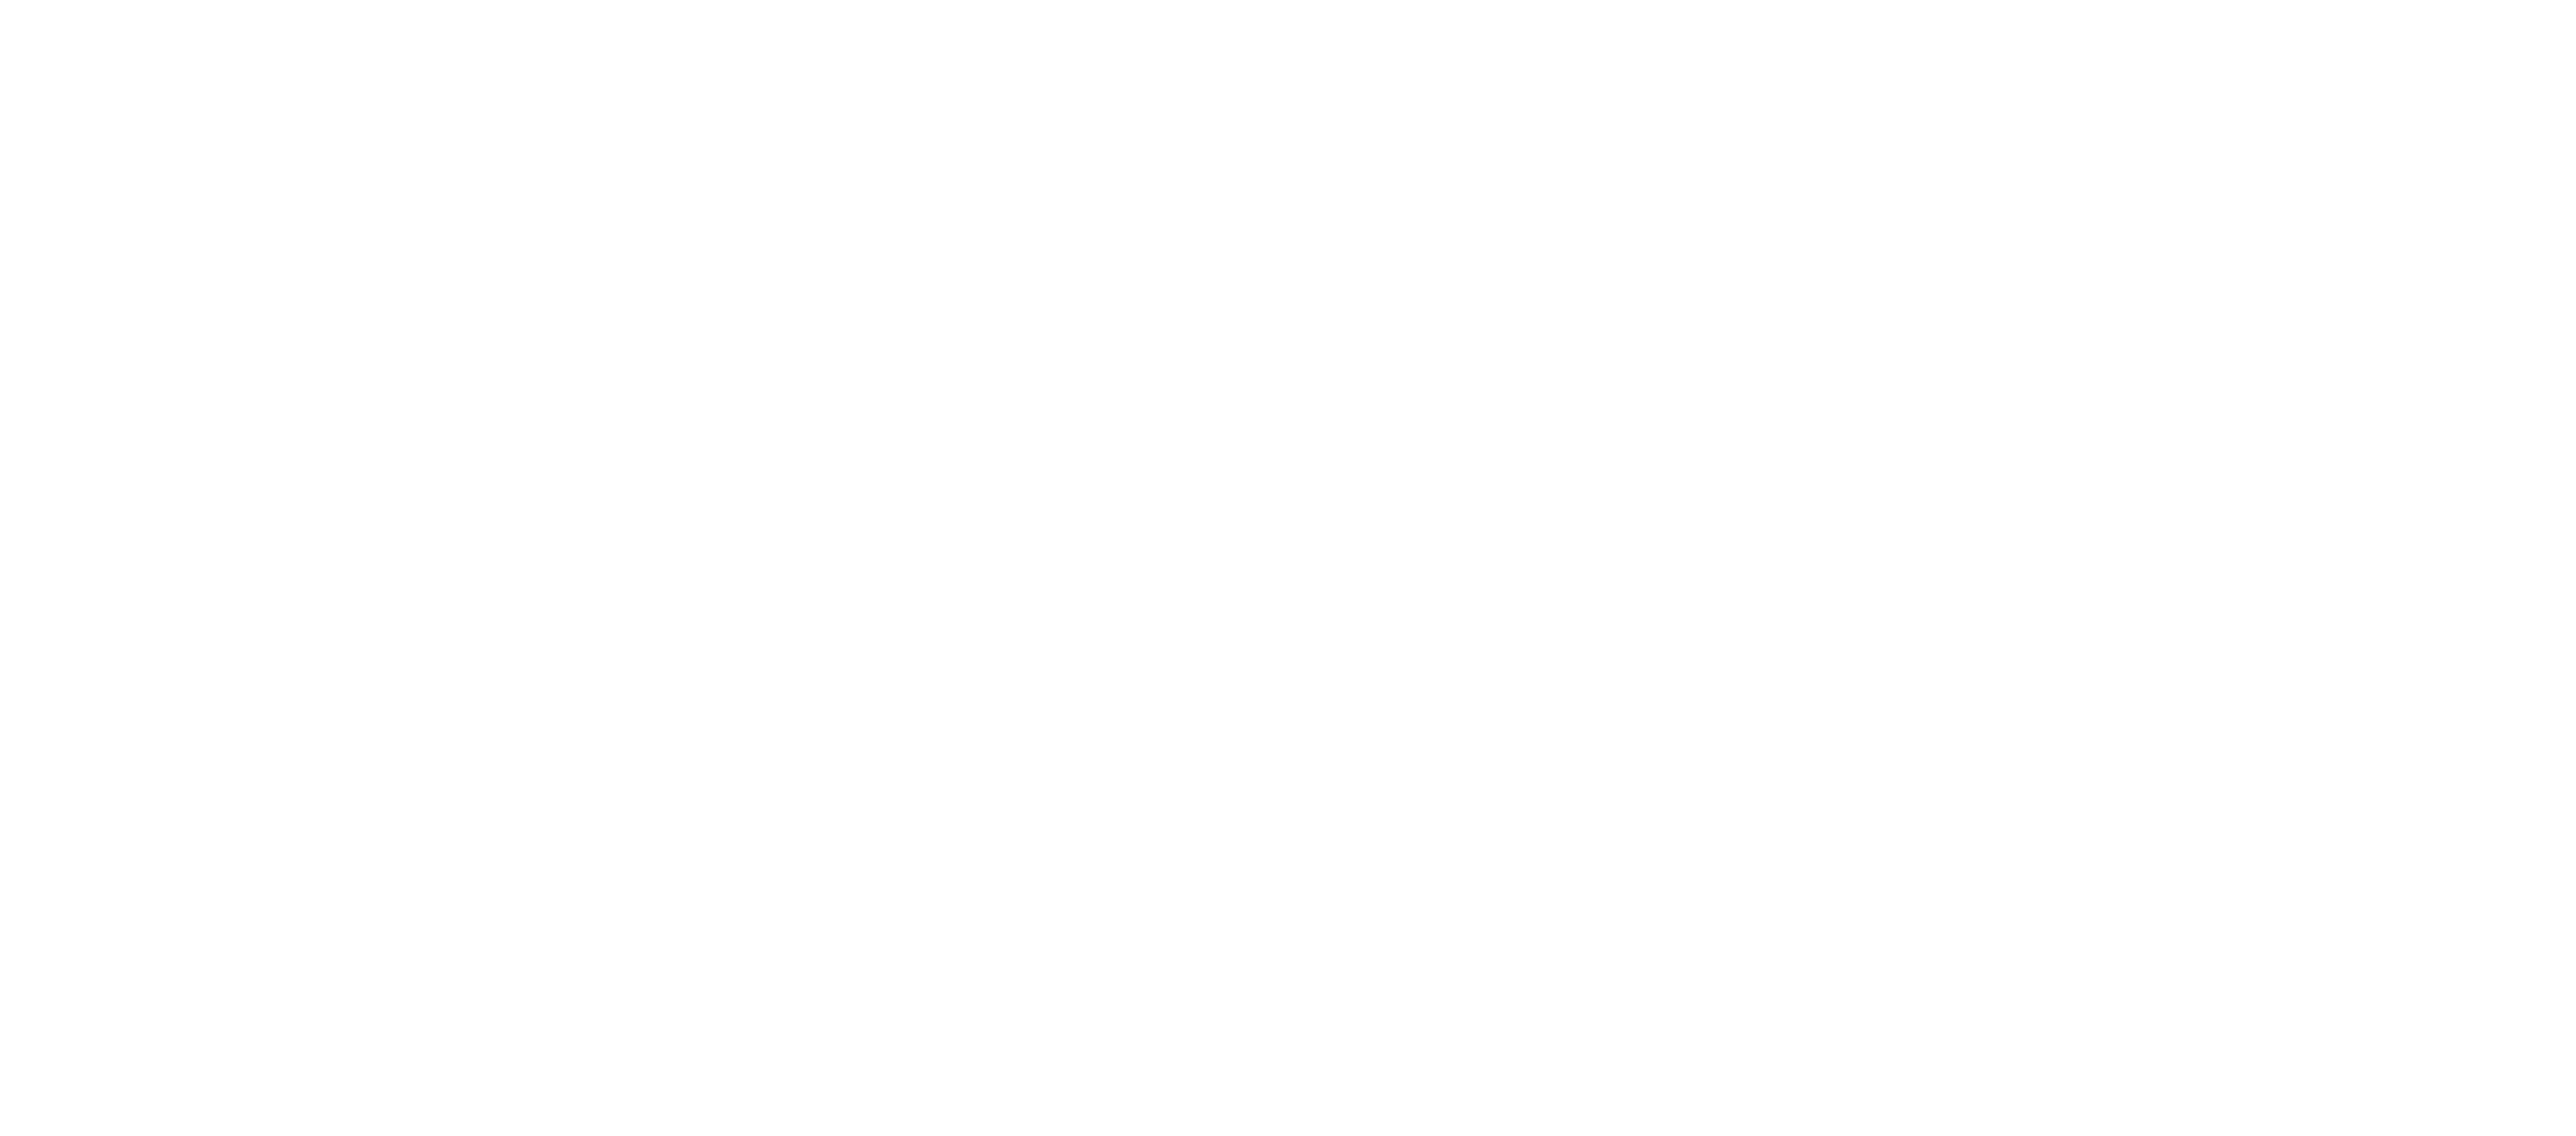 Logotipo da Prefeitura de Boa Vista